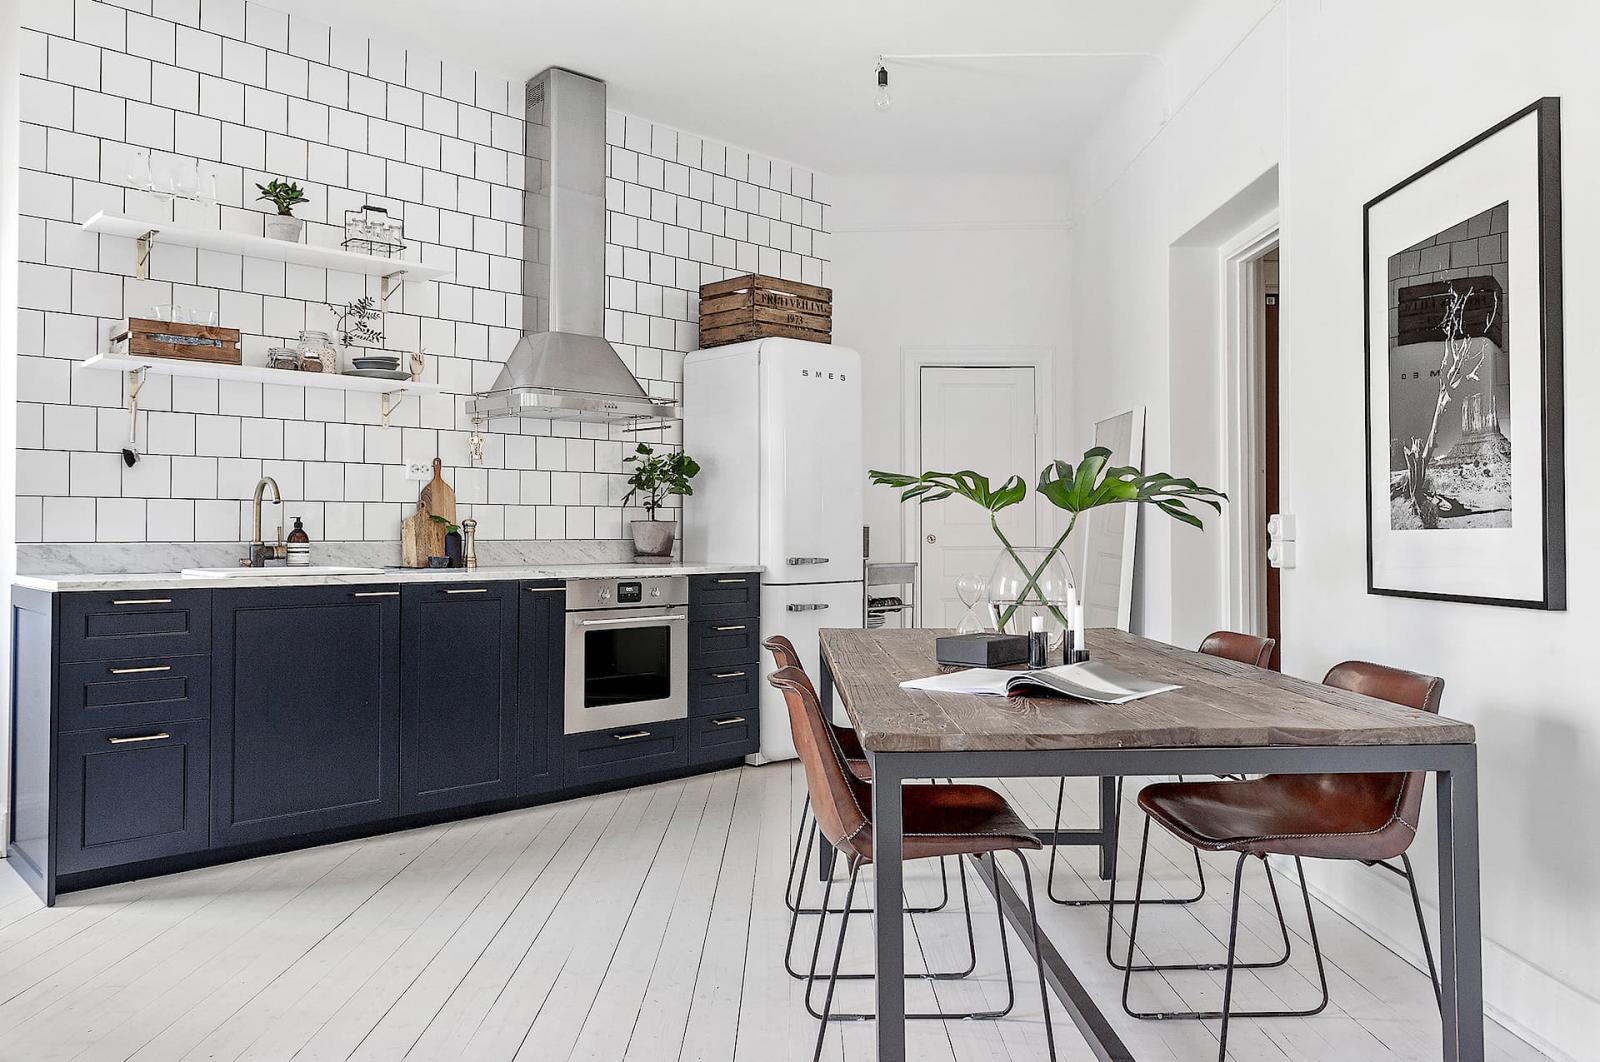 Hình ảnh toàn cảnh phòng bếp với tủ màu xanh than, tường ốp gạch trắng, máy hút mùi, tủ lạnh, bàn ăn bằng gỗ